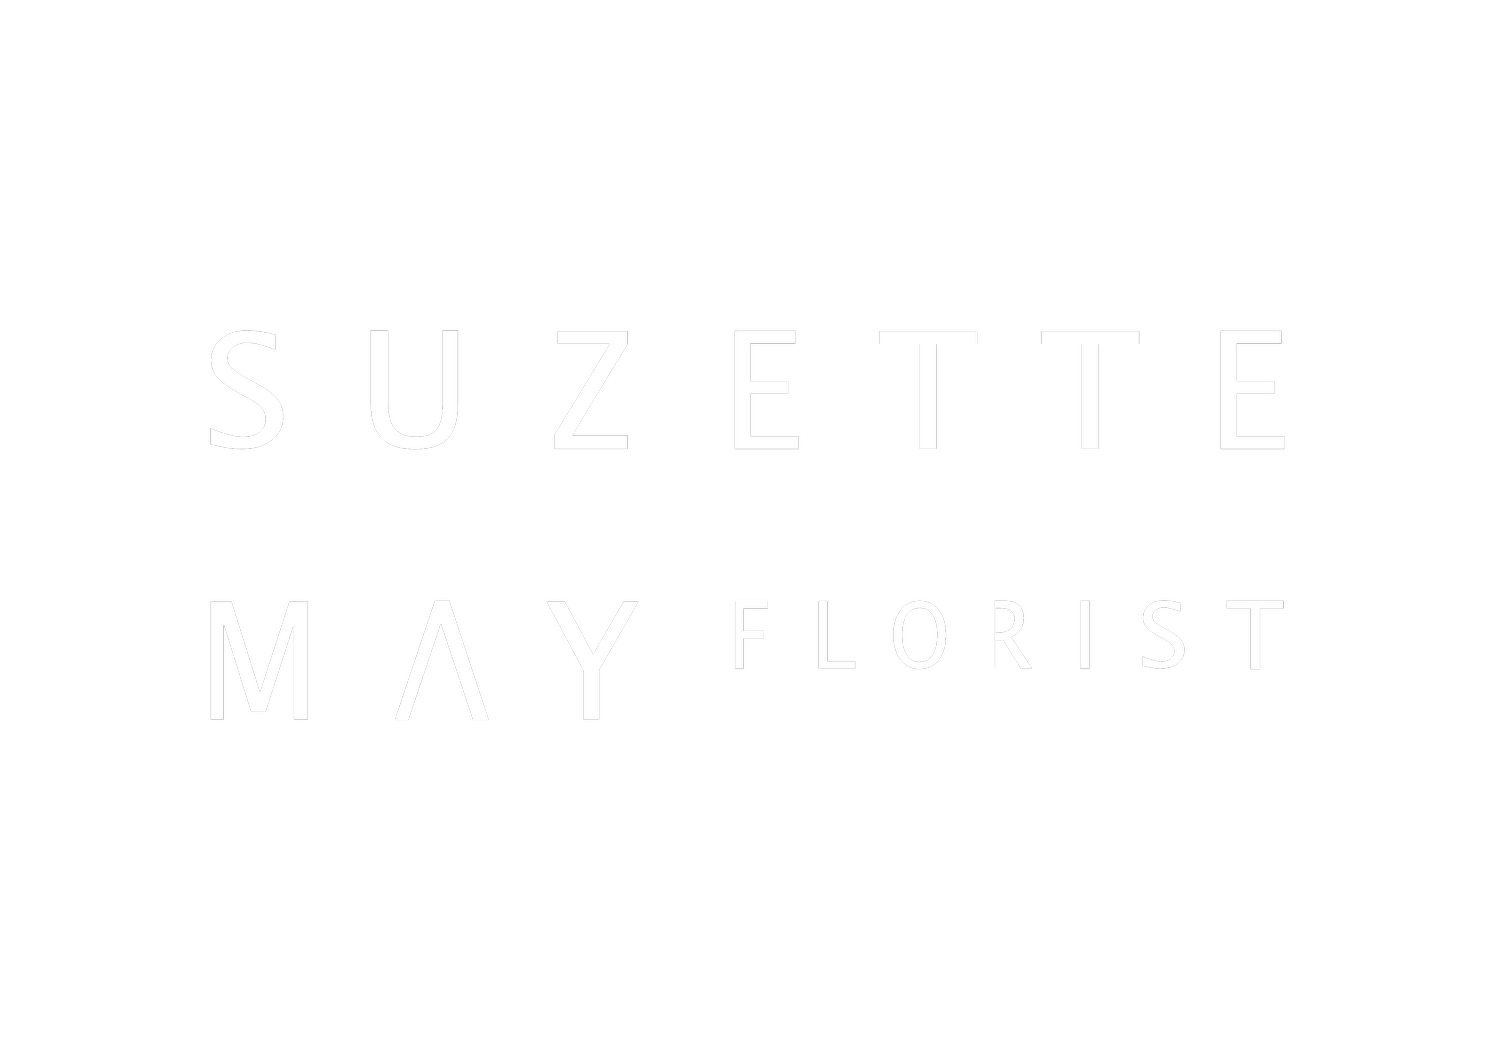 SUZETTE MAY FLORIST